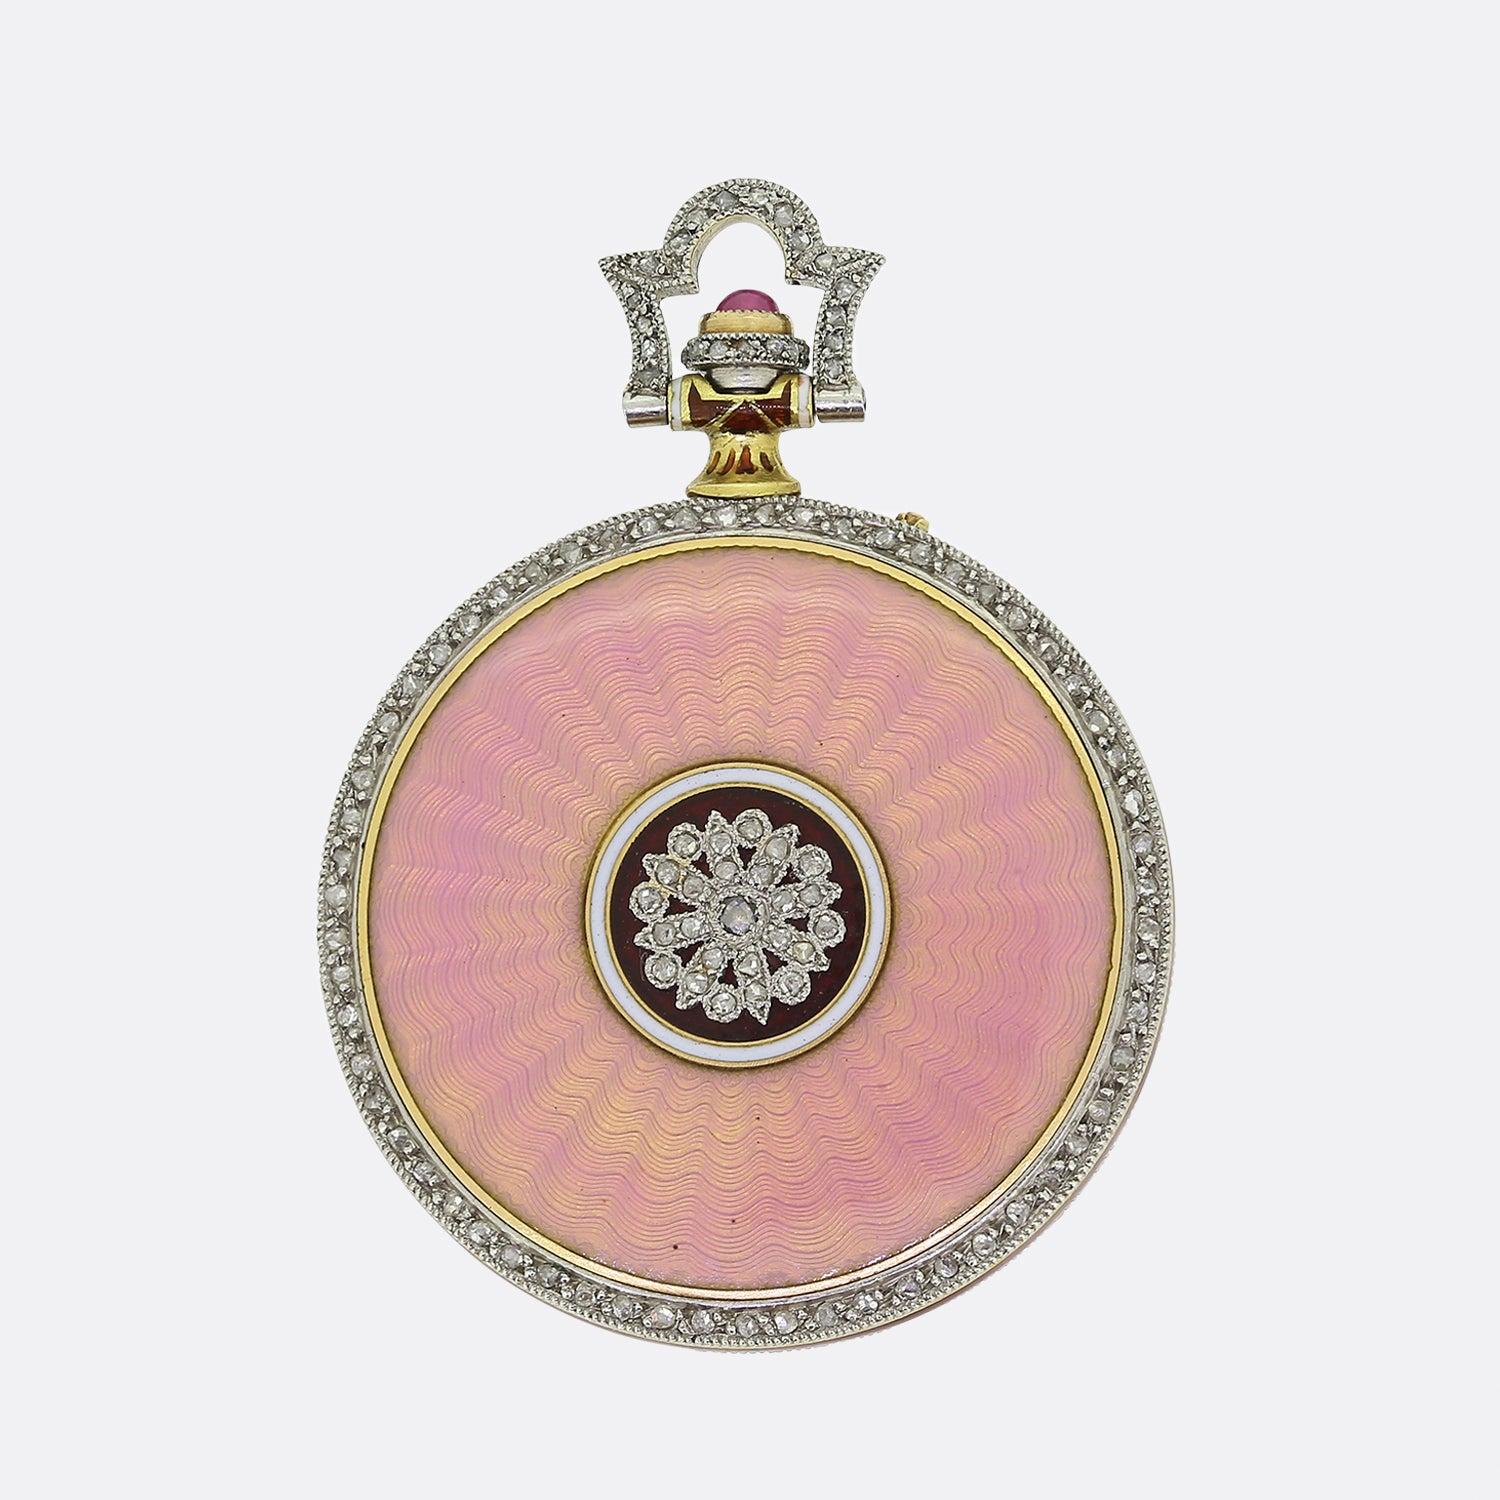 Nous avons ici une montre de poche pour dame exceptionnelle du créateur de bijoux de luxe mondialement connu, Chaumet. Cette pièce a été réalisée en or 18ct à une époque où le style Art déco était à son apogée. Un cadran de couleur dorée est